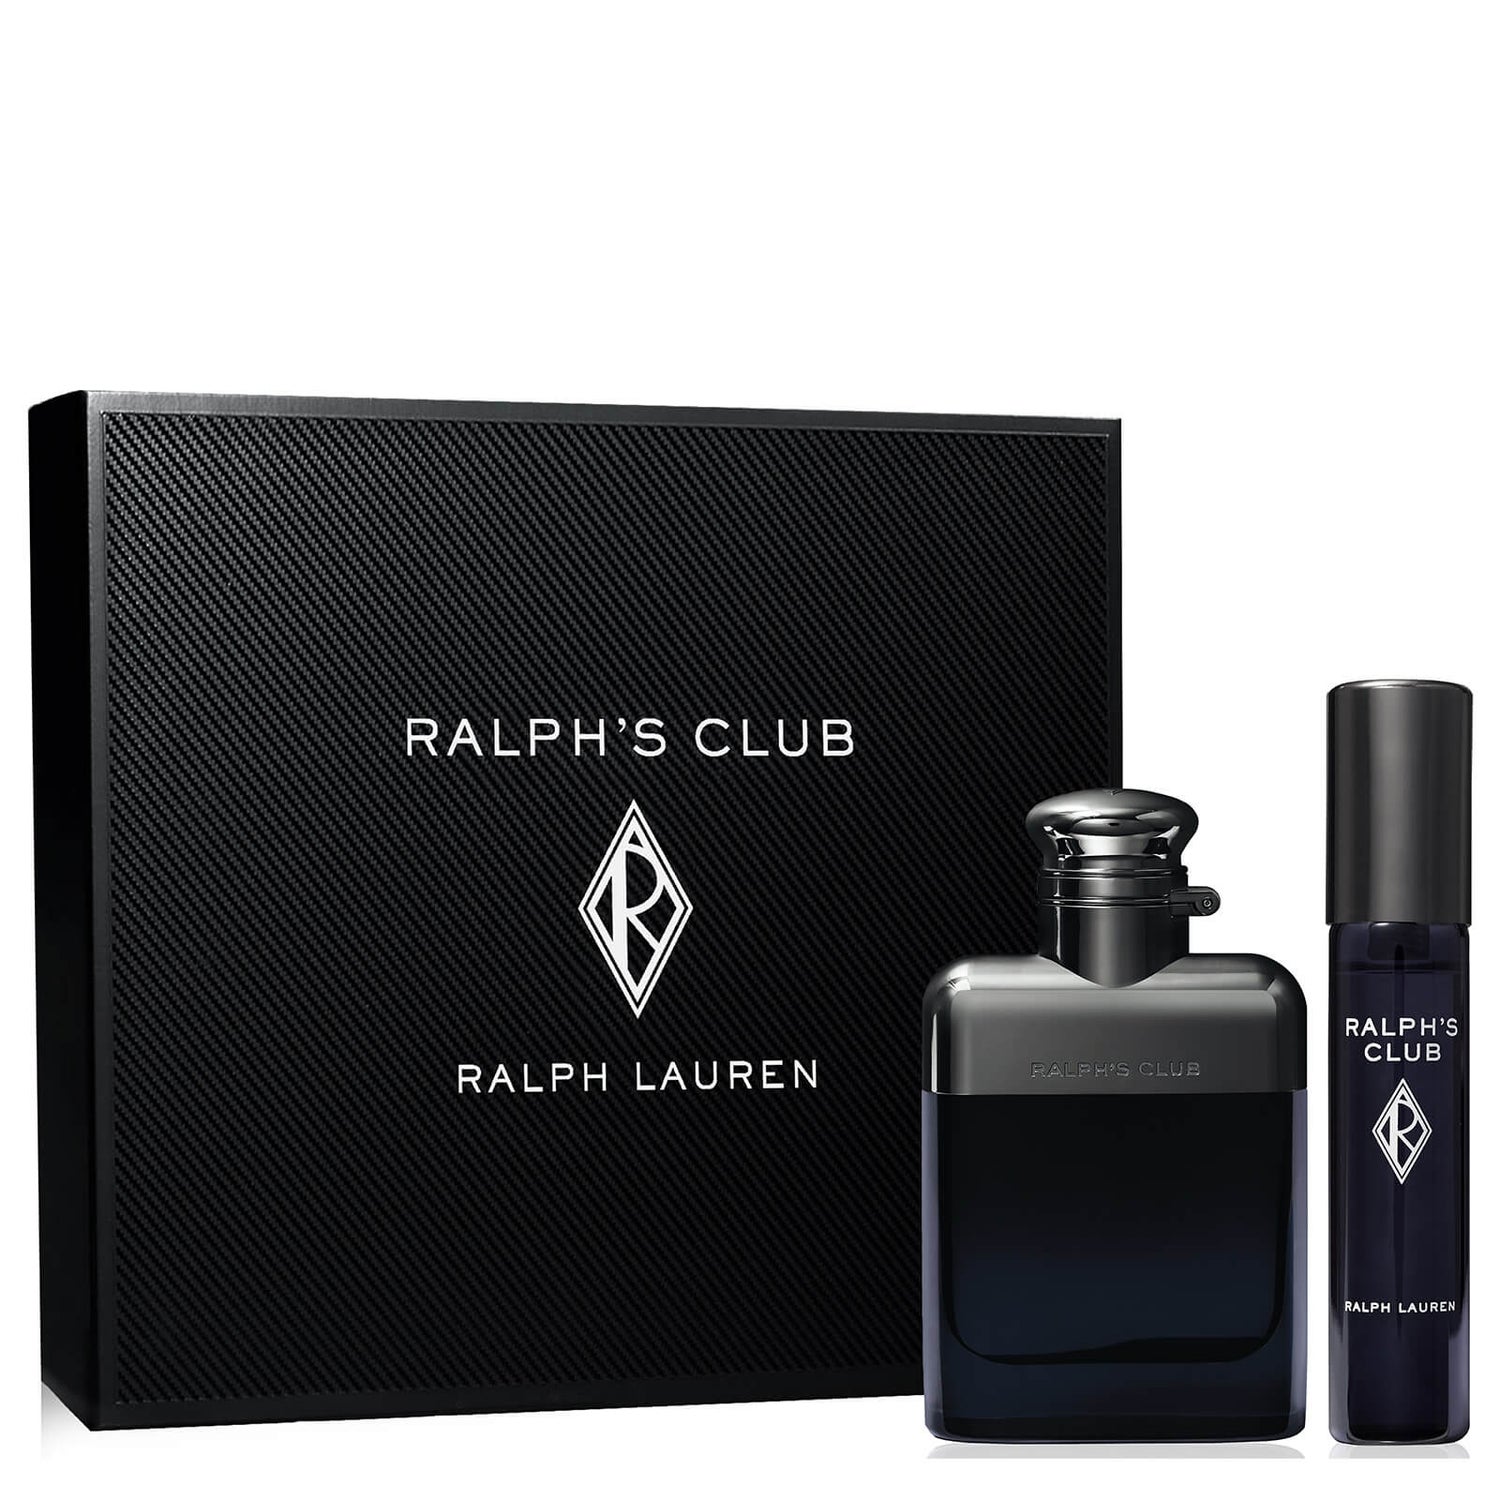 Conjunto de Presentes Ralph Lauren Ralph's Club Eau de Toilette 50ml (Vale 74.48€)